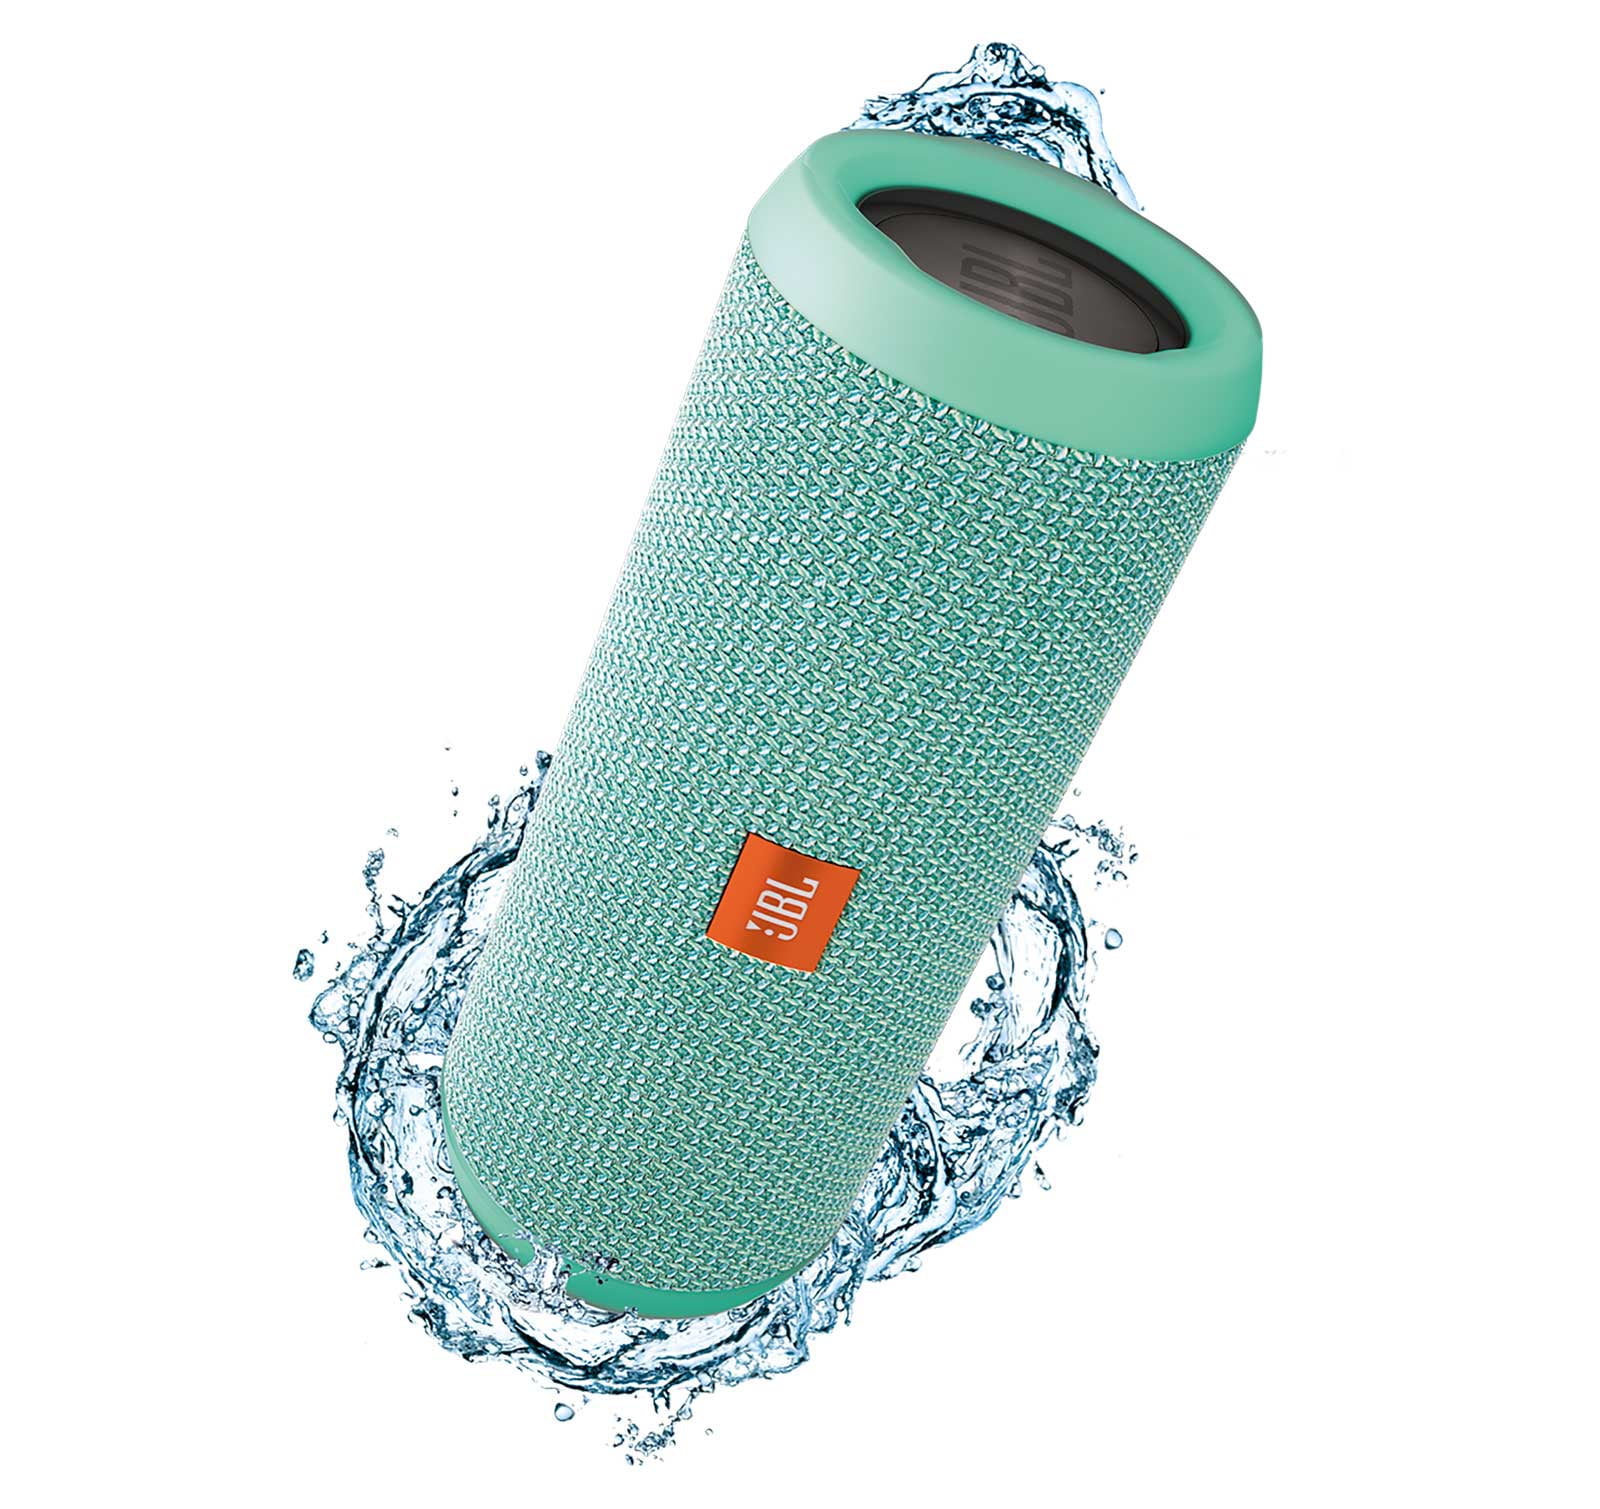 JBL Flip 3 Blue Open Box Splashproof Bluetooth Speaker